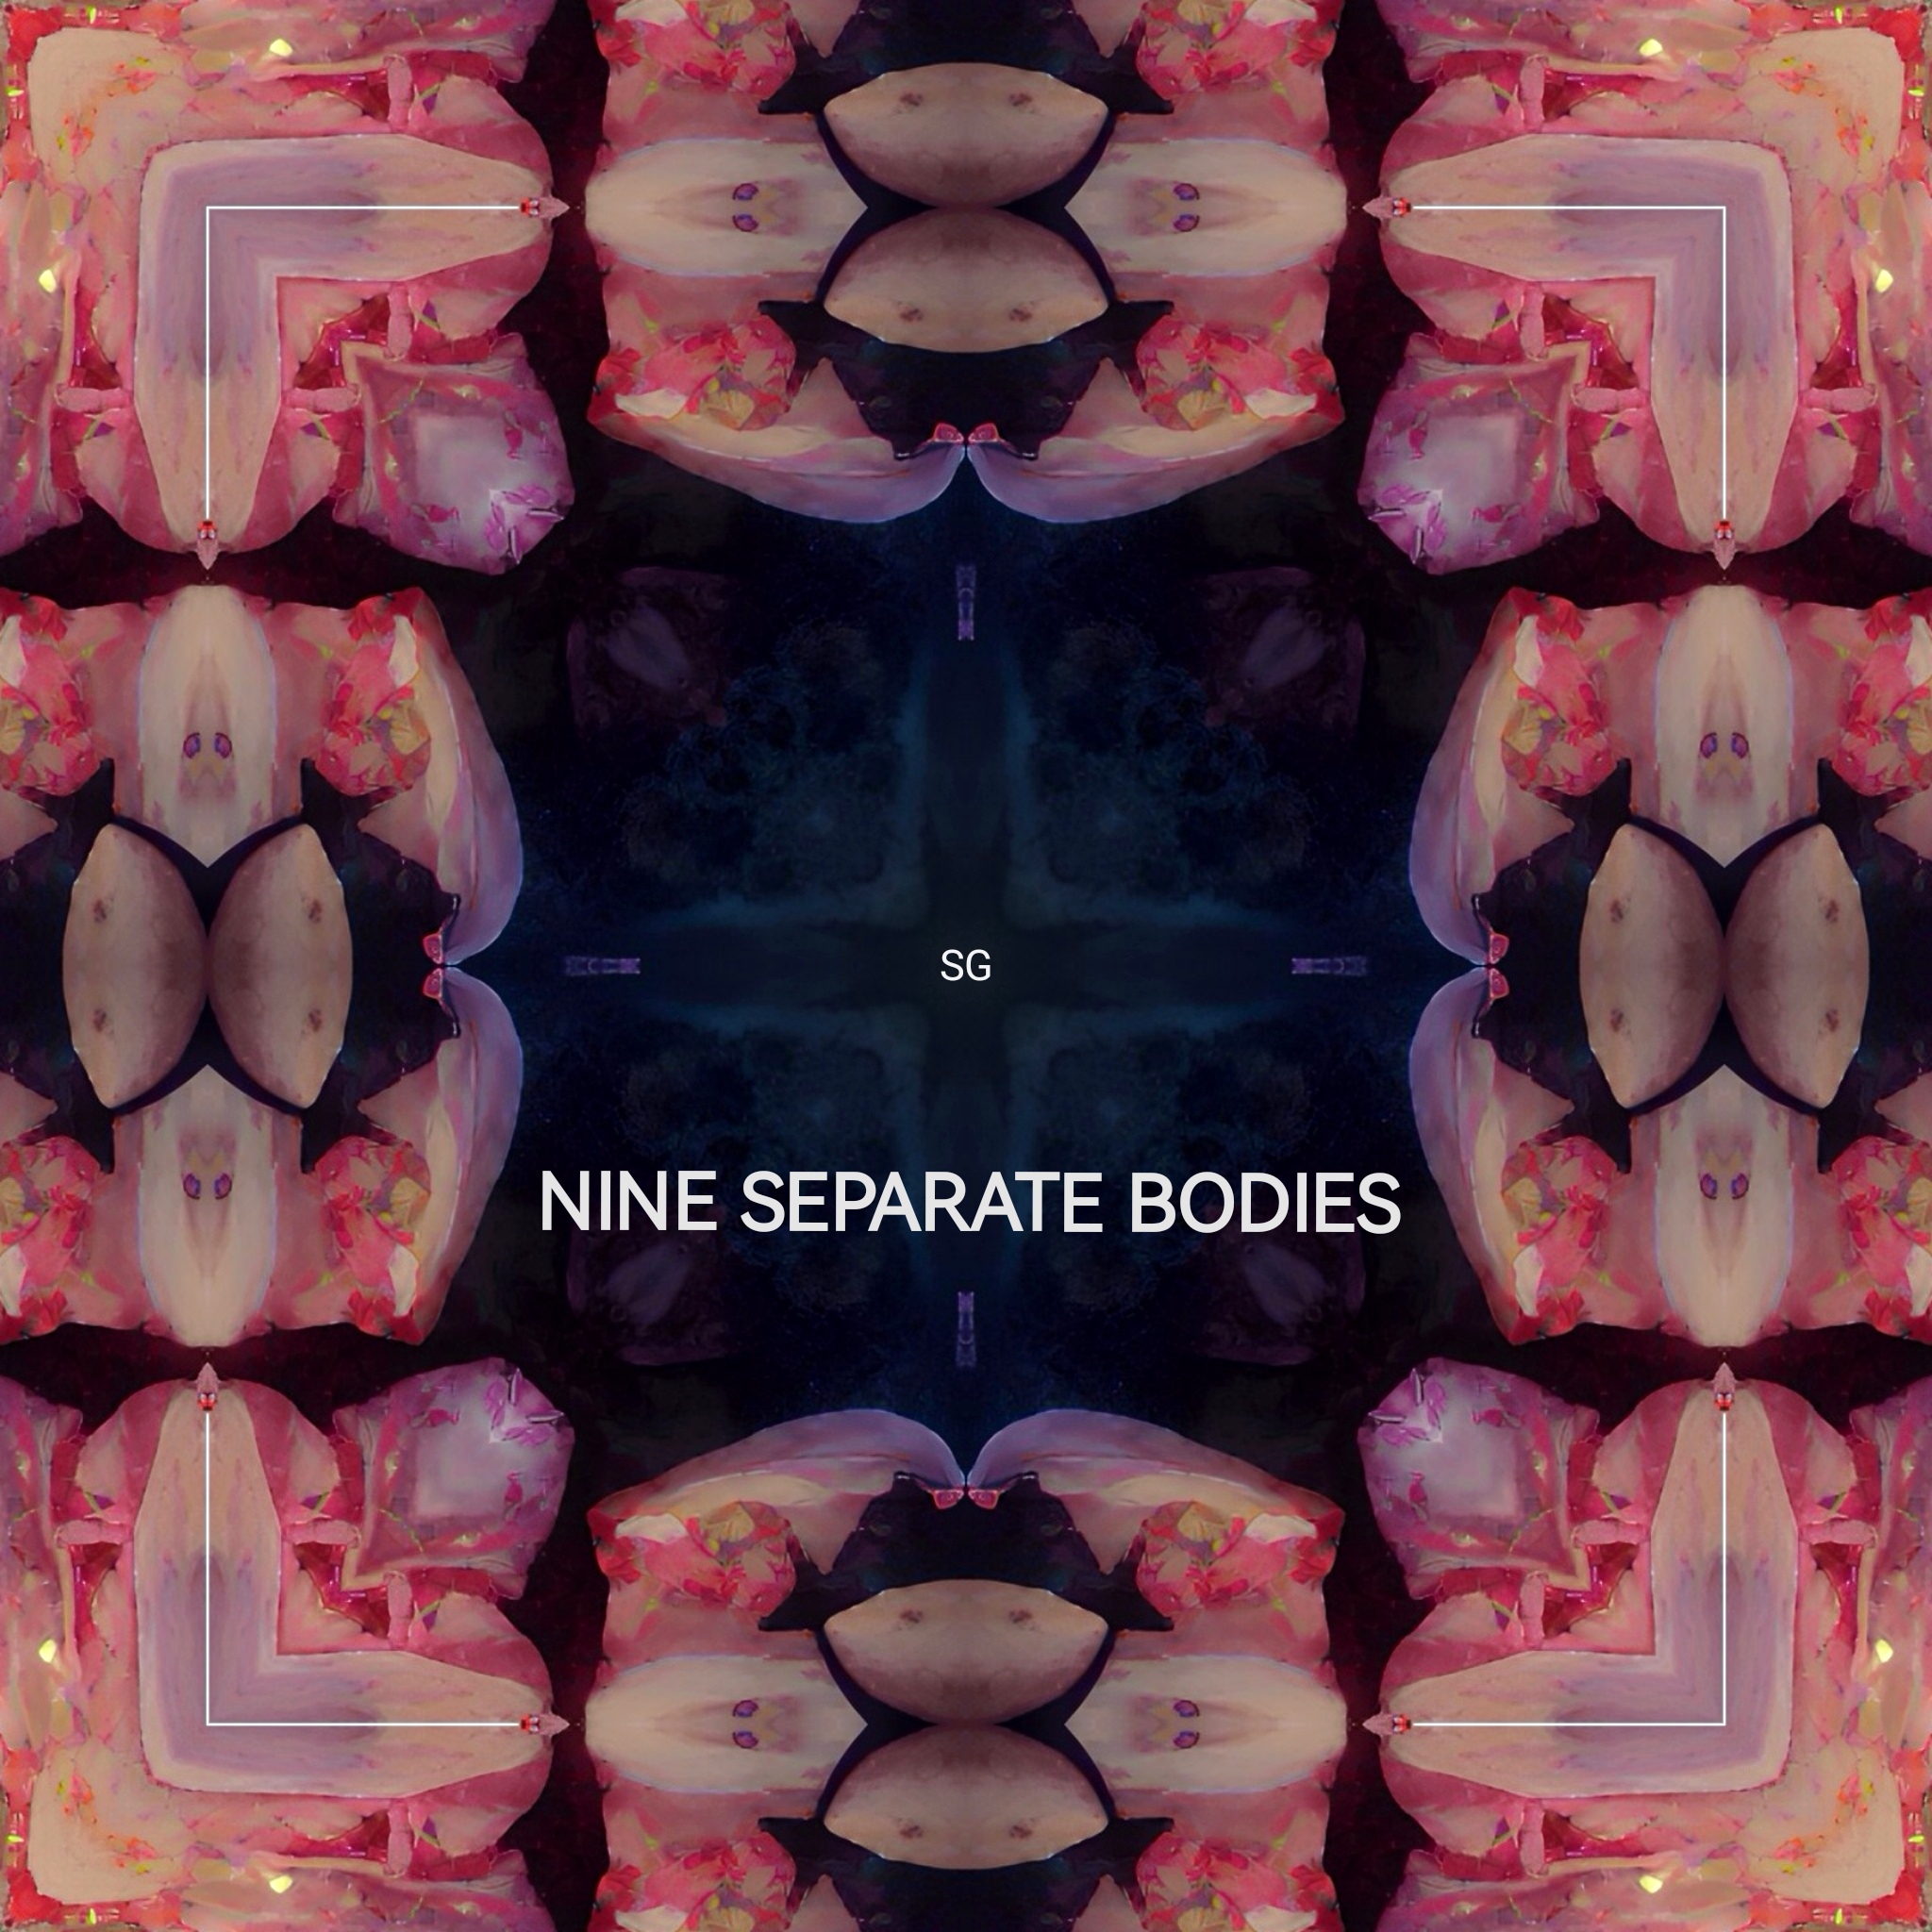 Nine Separate Bodies【9分身】